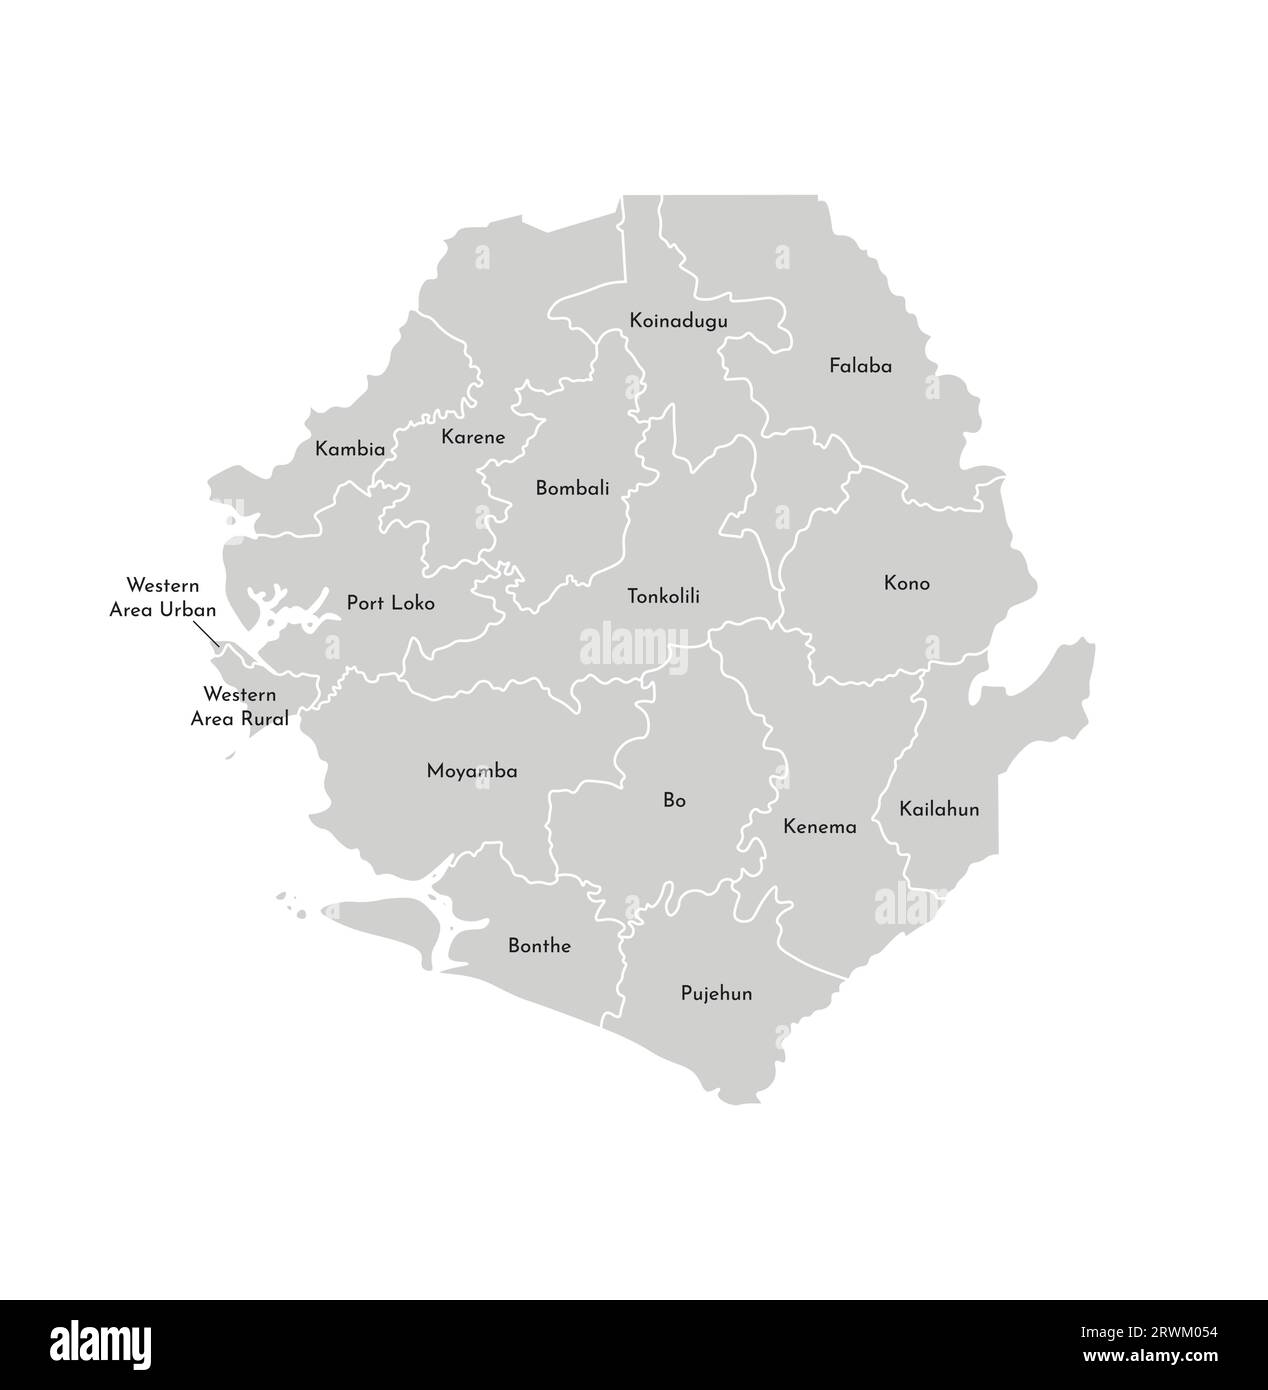 Illustrazione vettoriale isolata della mappa amministrativa semplificata della Sierra Leone. Confini e nomi dei distretti (regioni). Silhouette grigie. Bianco o Illustrazione Vettoriale